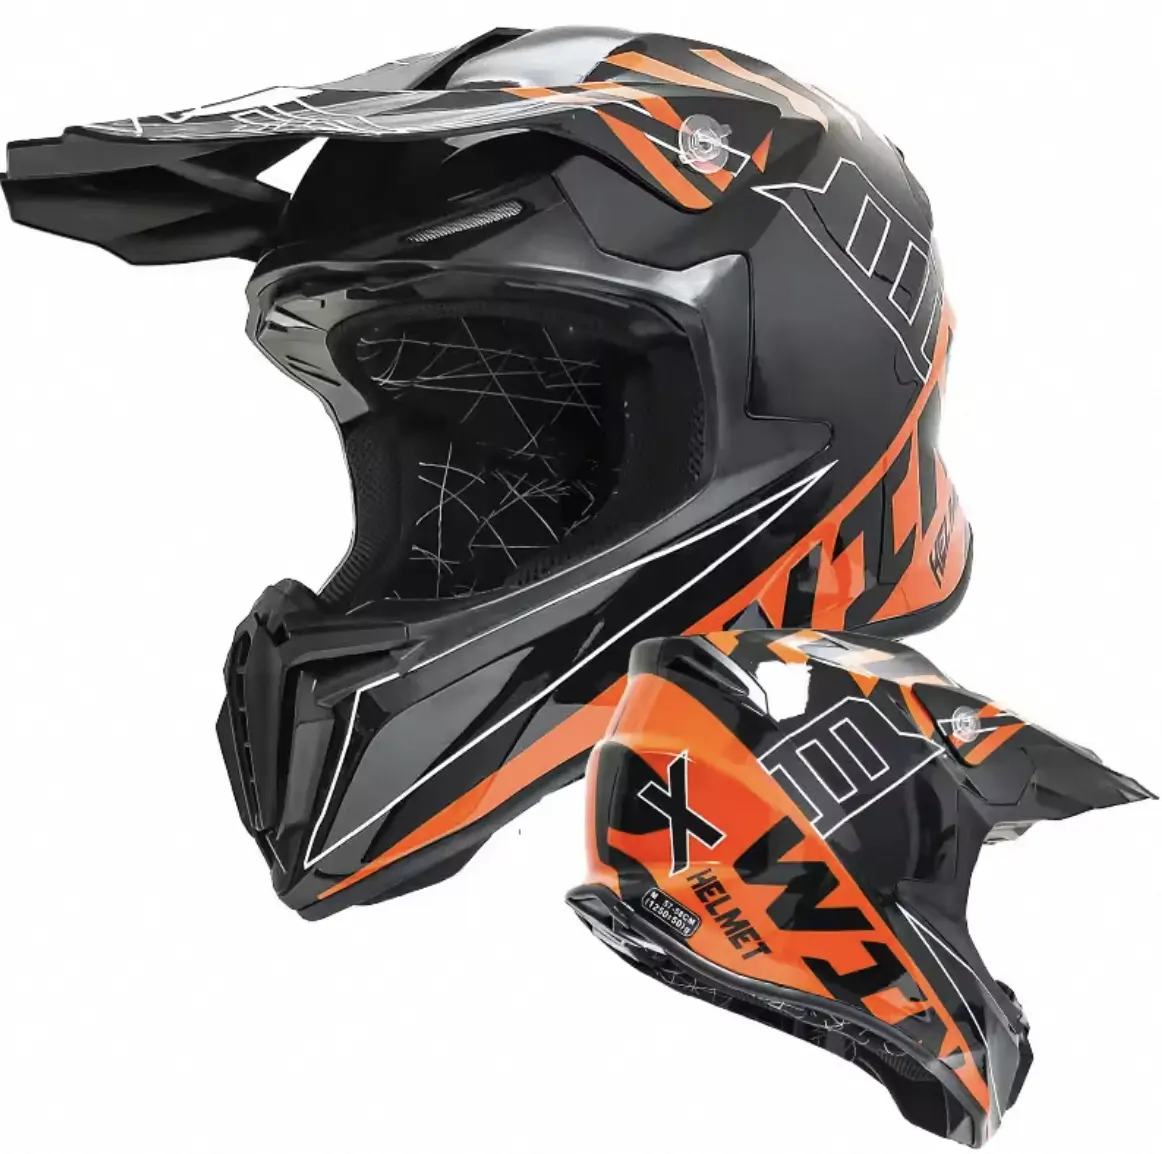 Chuyên nghiệp dành cho người lớn off road Mũ bảo hiểm xe máy xuống dốc Motocross Racing Mũ bảo hiểm chéo Mũ bảo hiểm casco casque Moto capacete